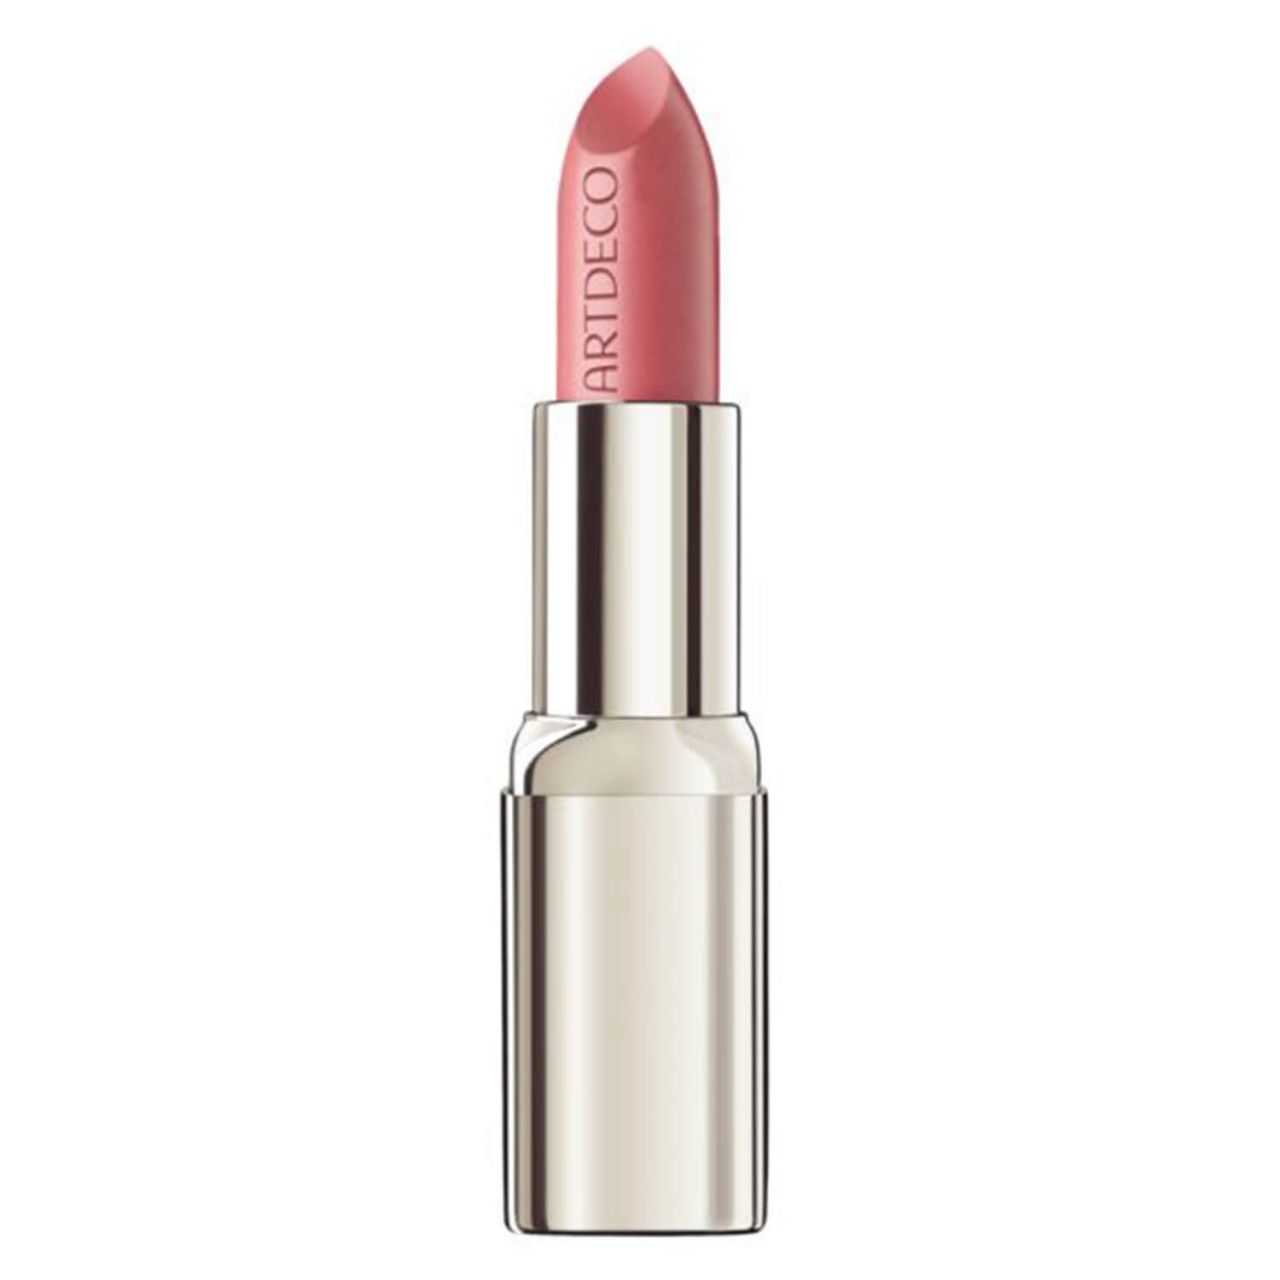 High Performance - Lipstick Soft Pink 474 von Artdeco